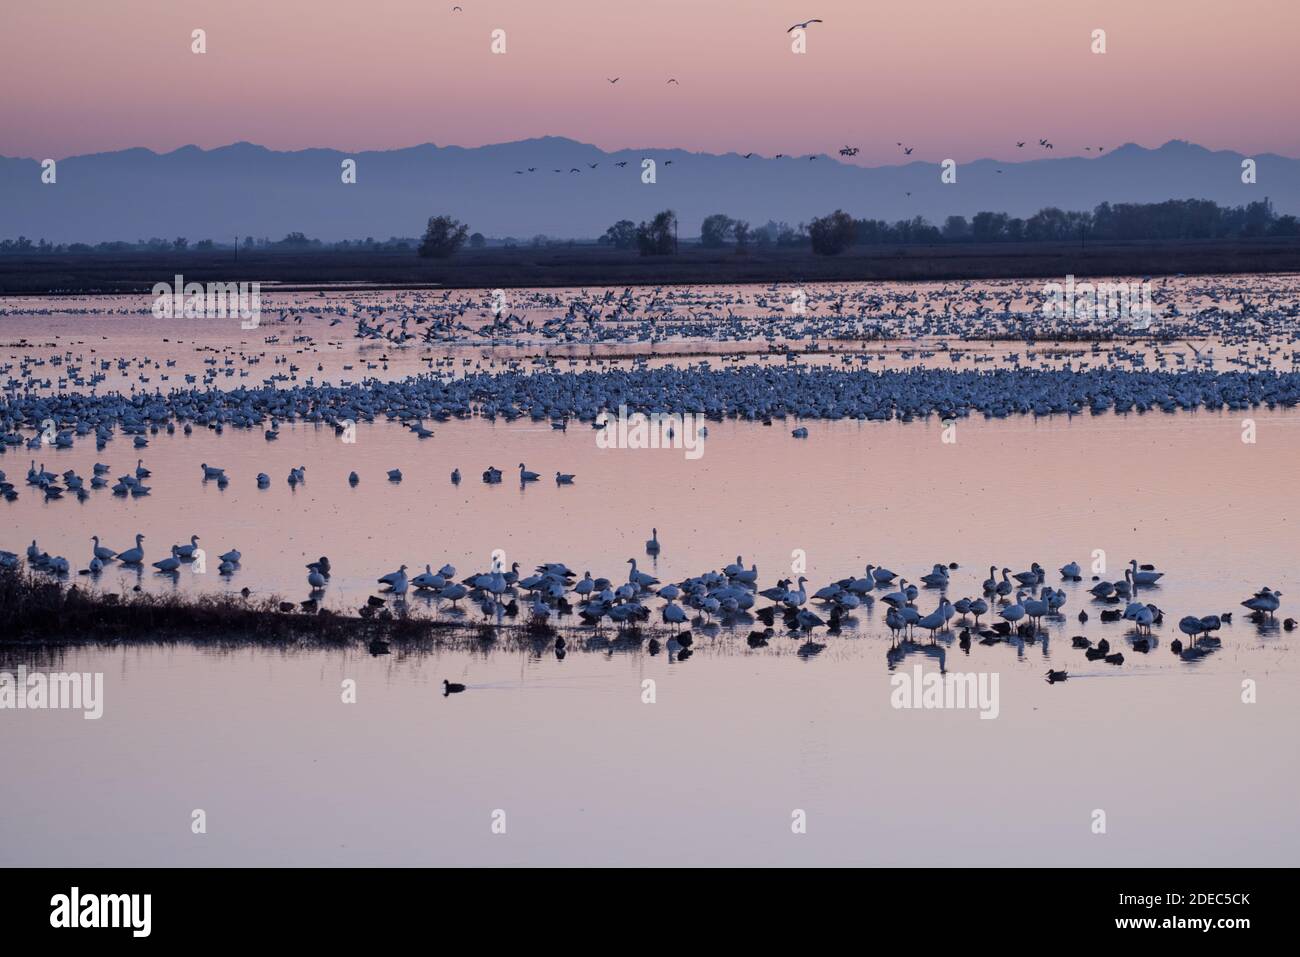 D'énormes troupeaux d'oies des neiges (Anser caerulescens) migrent vers le marais d'eau douce du refuge faunique de Sacramento, en Californie, à l'automne, pour passer l'hiver. Banque D'Images